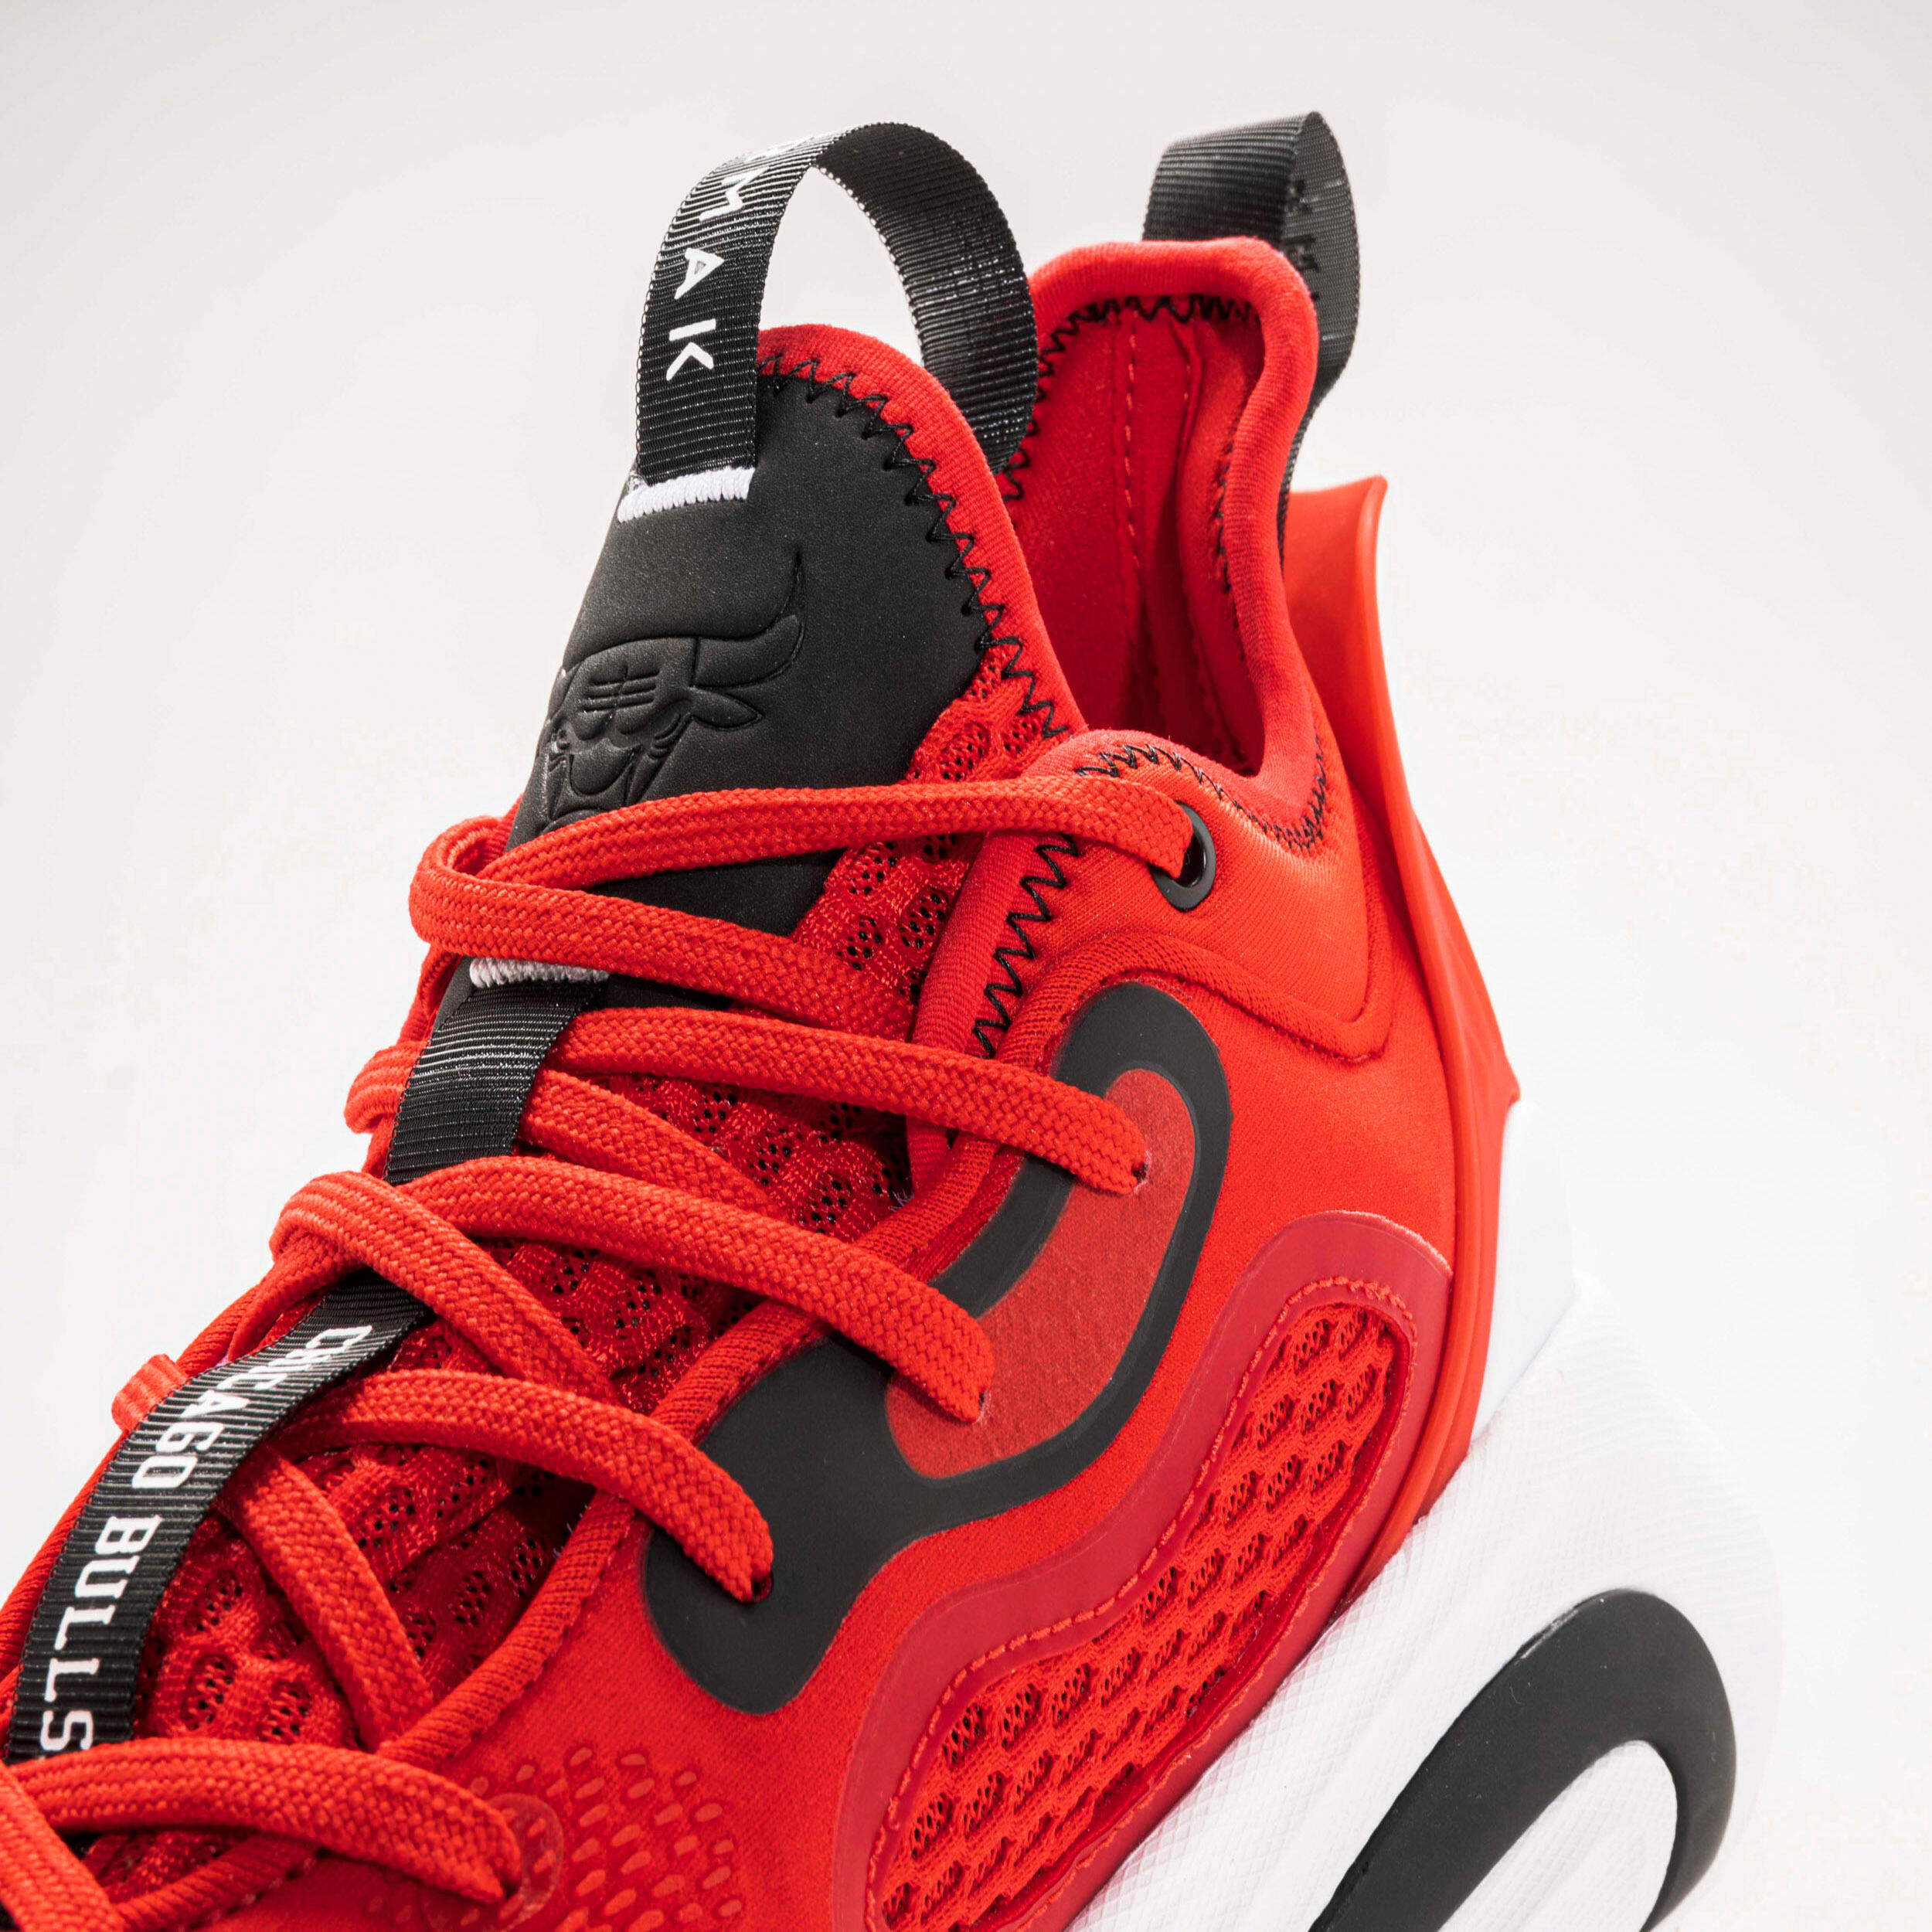 Men's/Women's Basketball Shoes SE900 - Red/NBA Chicago Bulls 4/10